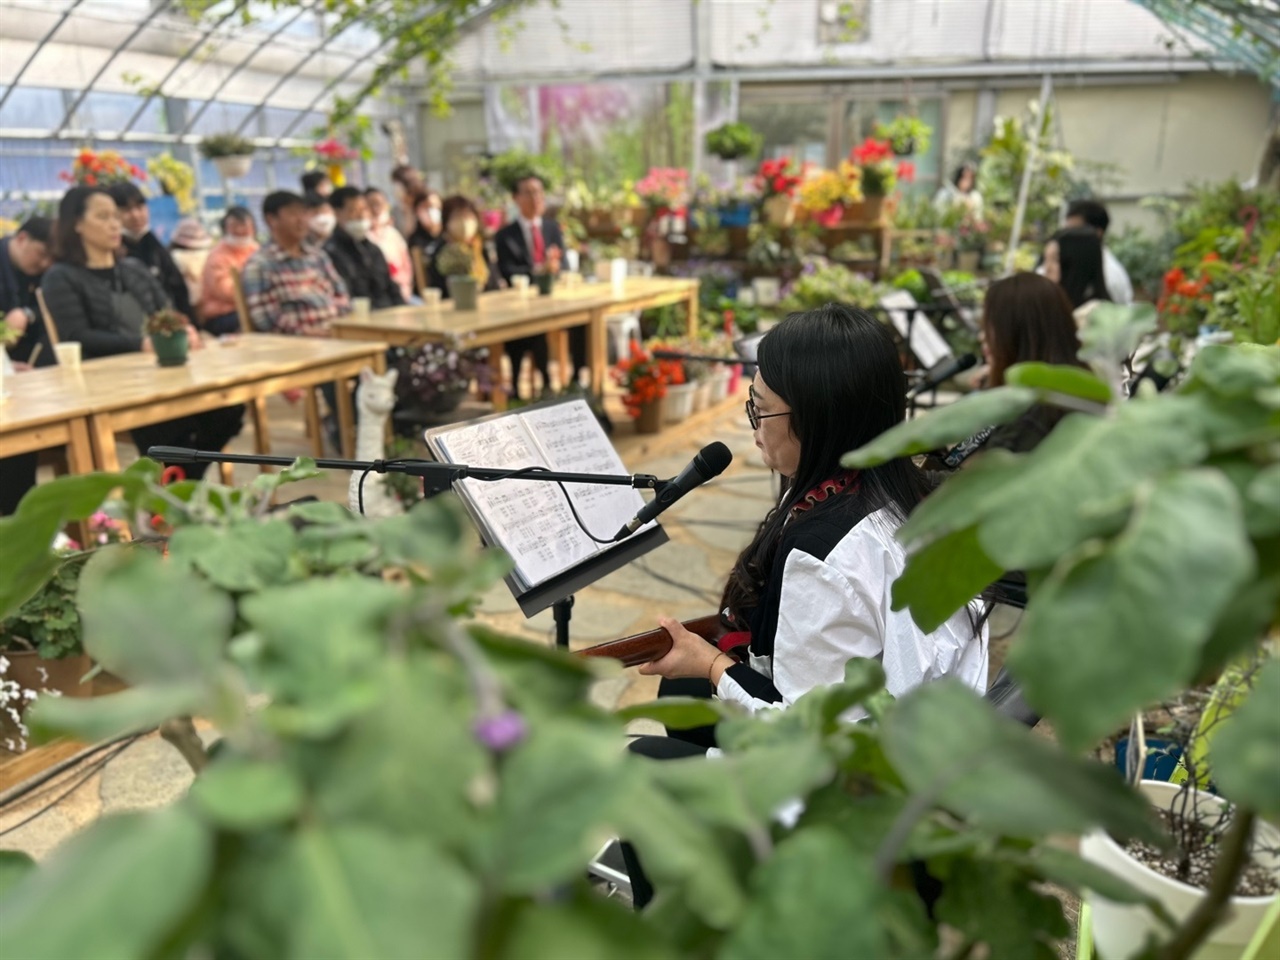 온실 내 작은 무대에서 열린 이날 음악회에서 '소리둥지'는 주말을 맞아 676.8㎡의 식물원을 찾은 관광객을 비롯해 지역주민 30여 명에게 감미로운 통기타 음악을 통해 힐링을 선물했다.